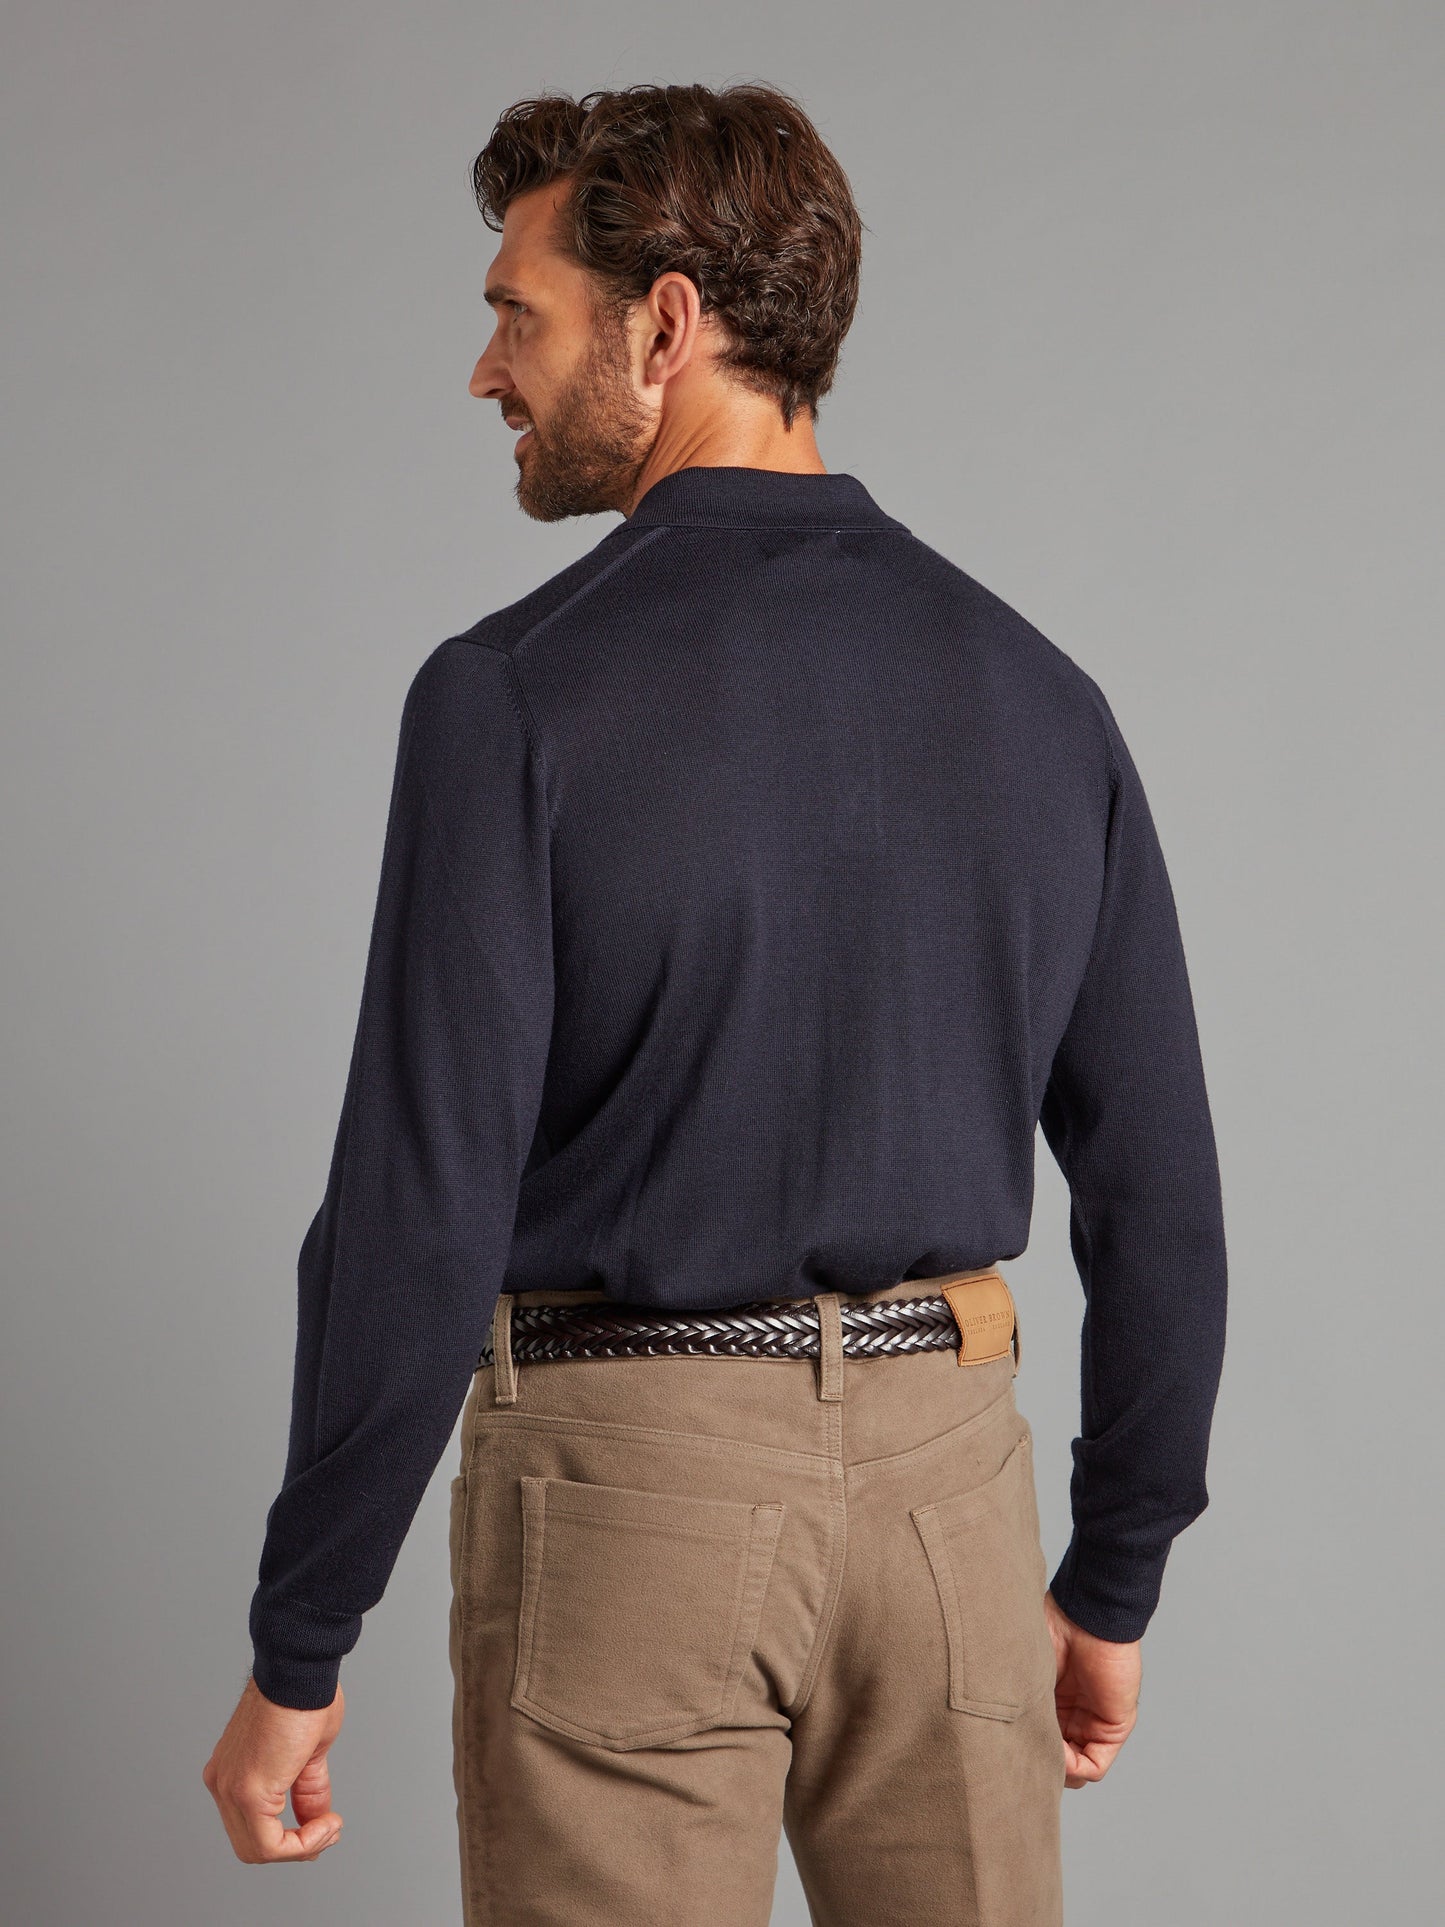 Fine Merino Long Sleeve Polo Shirt - Navy